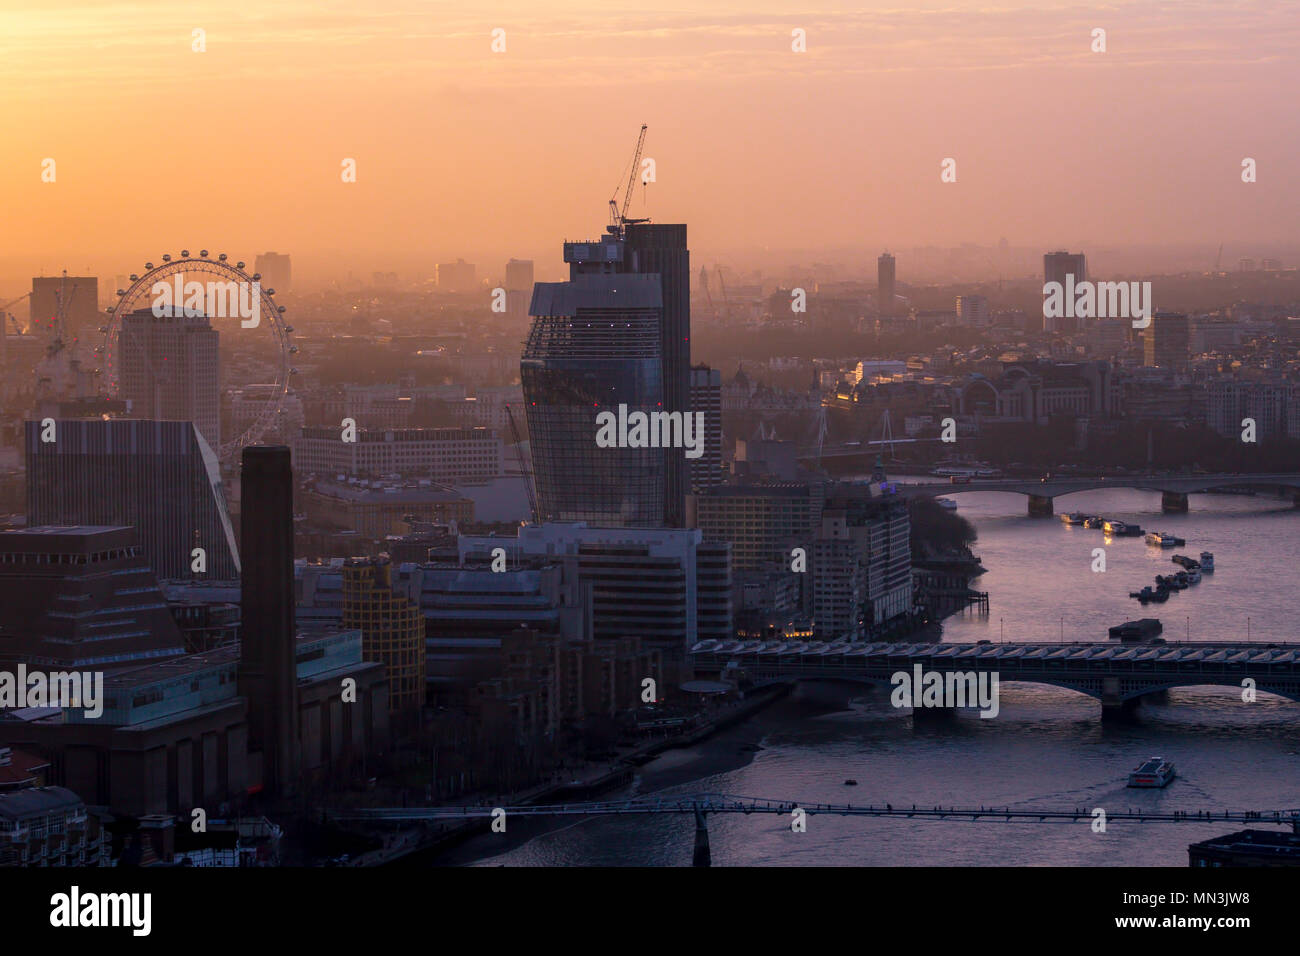 El horizonte de la ciudad de Londres. Un paisaje al atardecer. A pesar de la apariencia de ensueño, Londres sufre de altos niveles de contaminación del aire, afectando la salud de muchos. Foto de stock